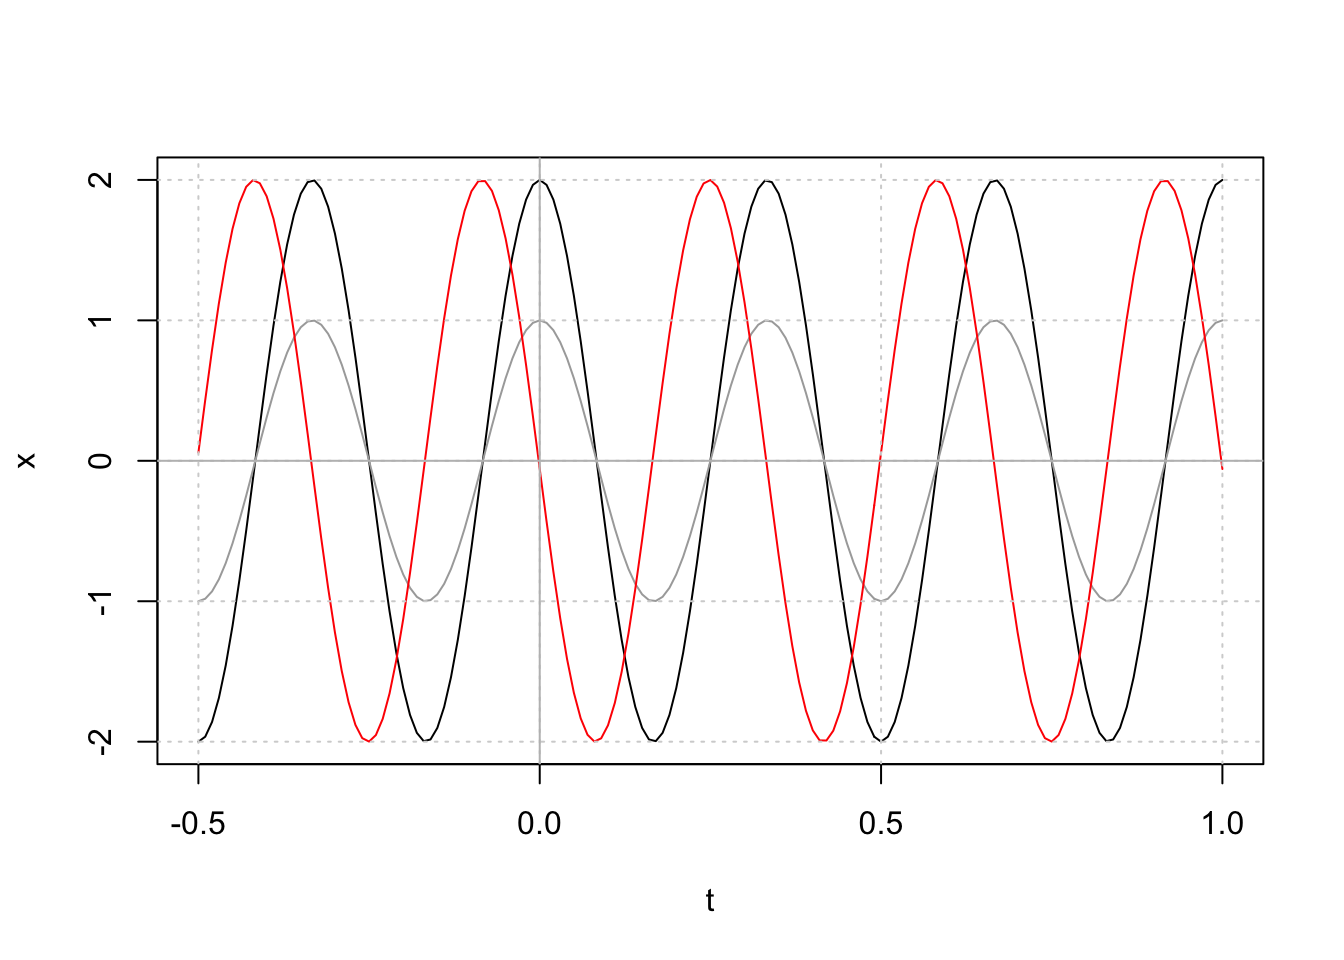 Fonction cosinus avec une fréquence de 3. En gris, amplitude = 1, phase = 0. En noir, amplitude = 2, phase = 0. En rouge, amplitude = 2, phase = 1.6.